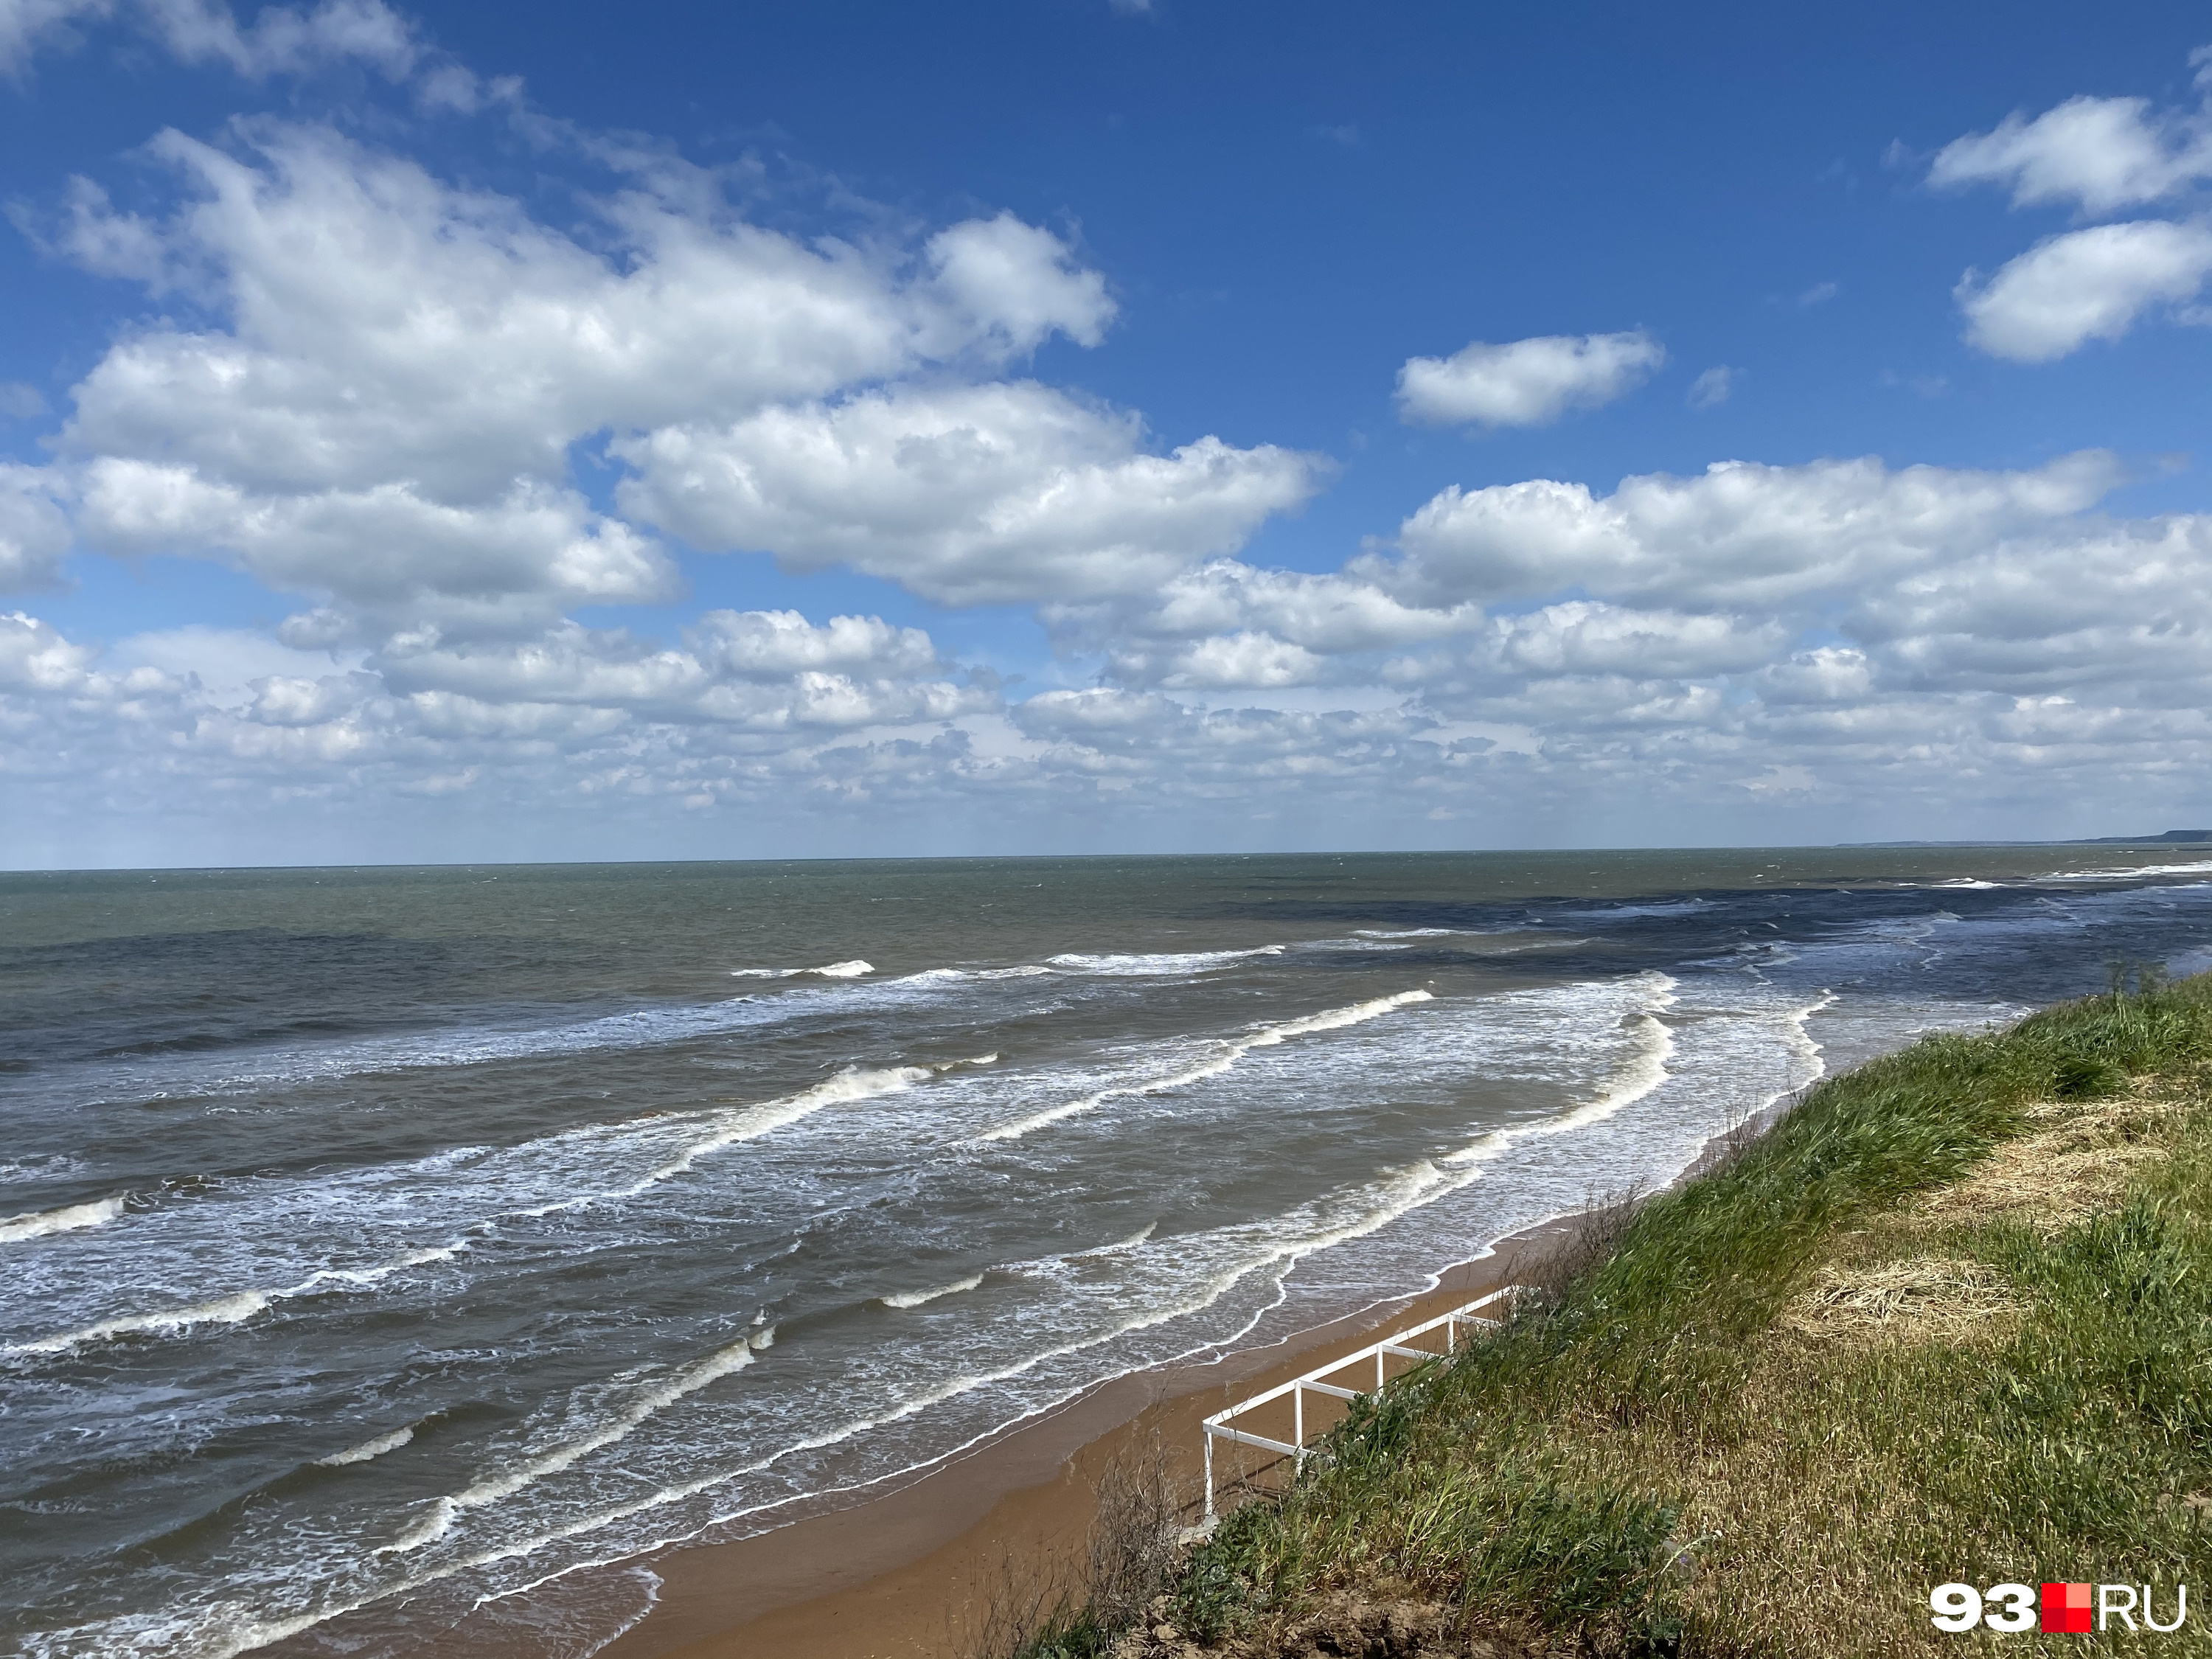 Отдых на Азовском море остается самым бюджетным вариантом